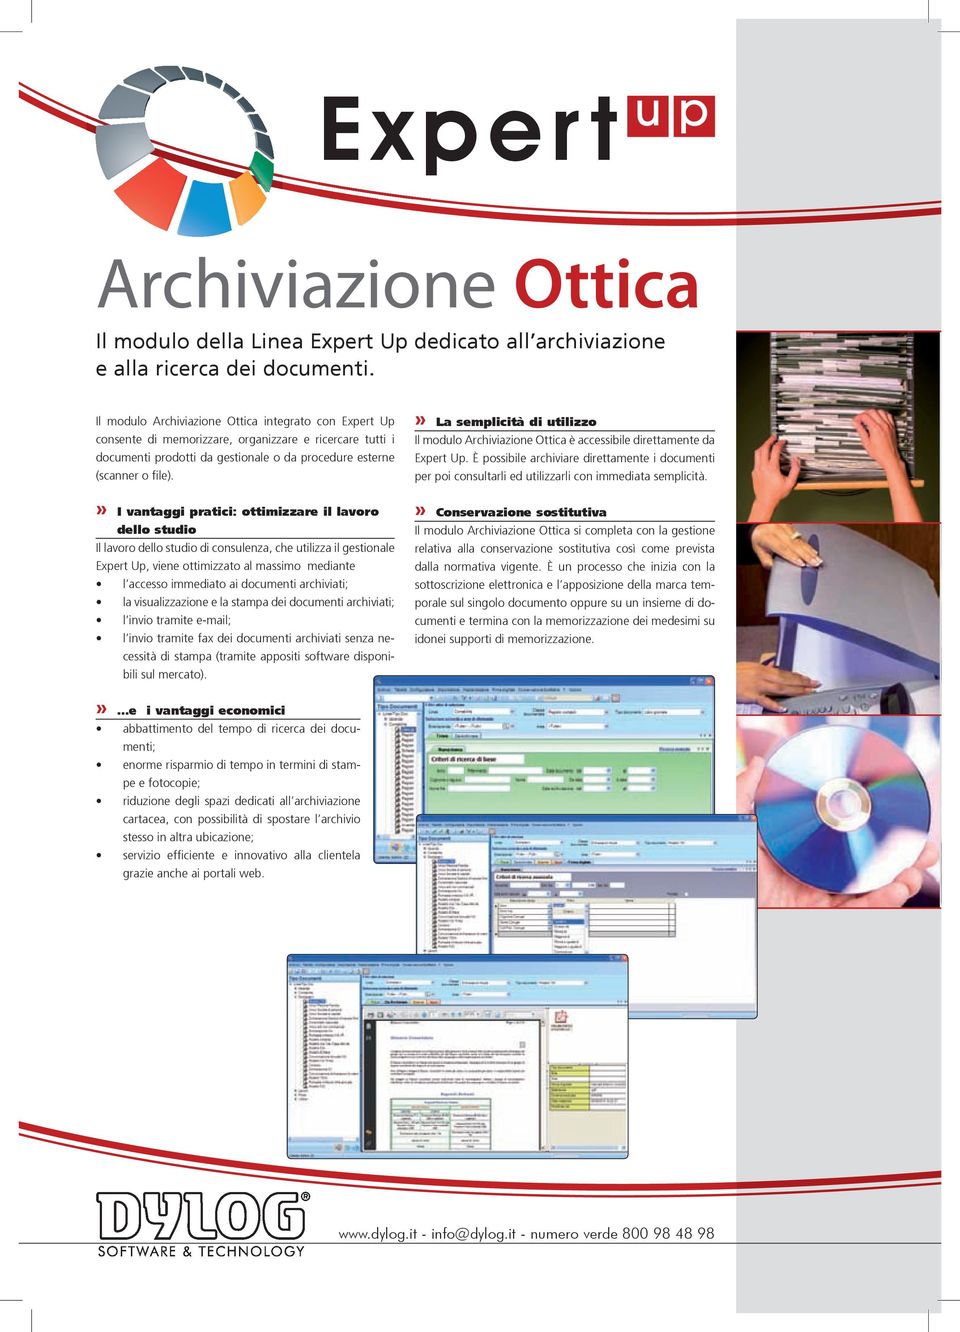 » La semplicità di utilizzo Il modulo Archiviazione Ottica è accessibile direttamente da Expert Up.